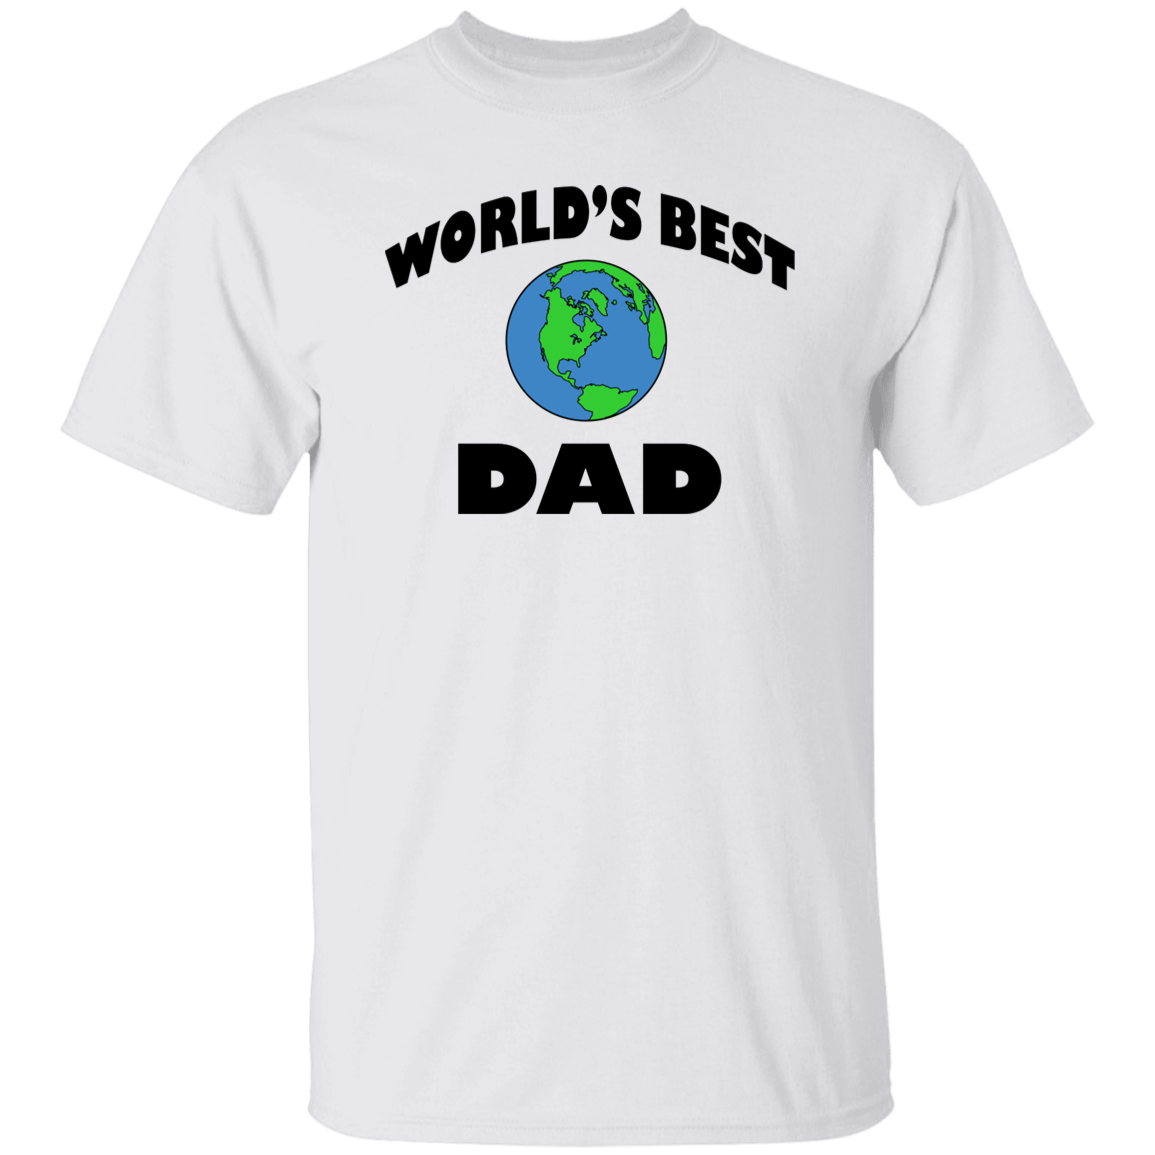 World's Best Dad T-Shirt